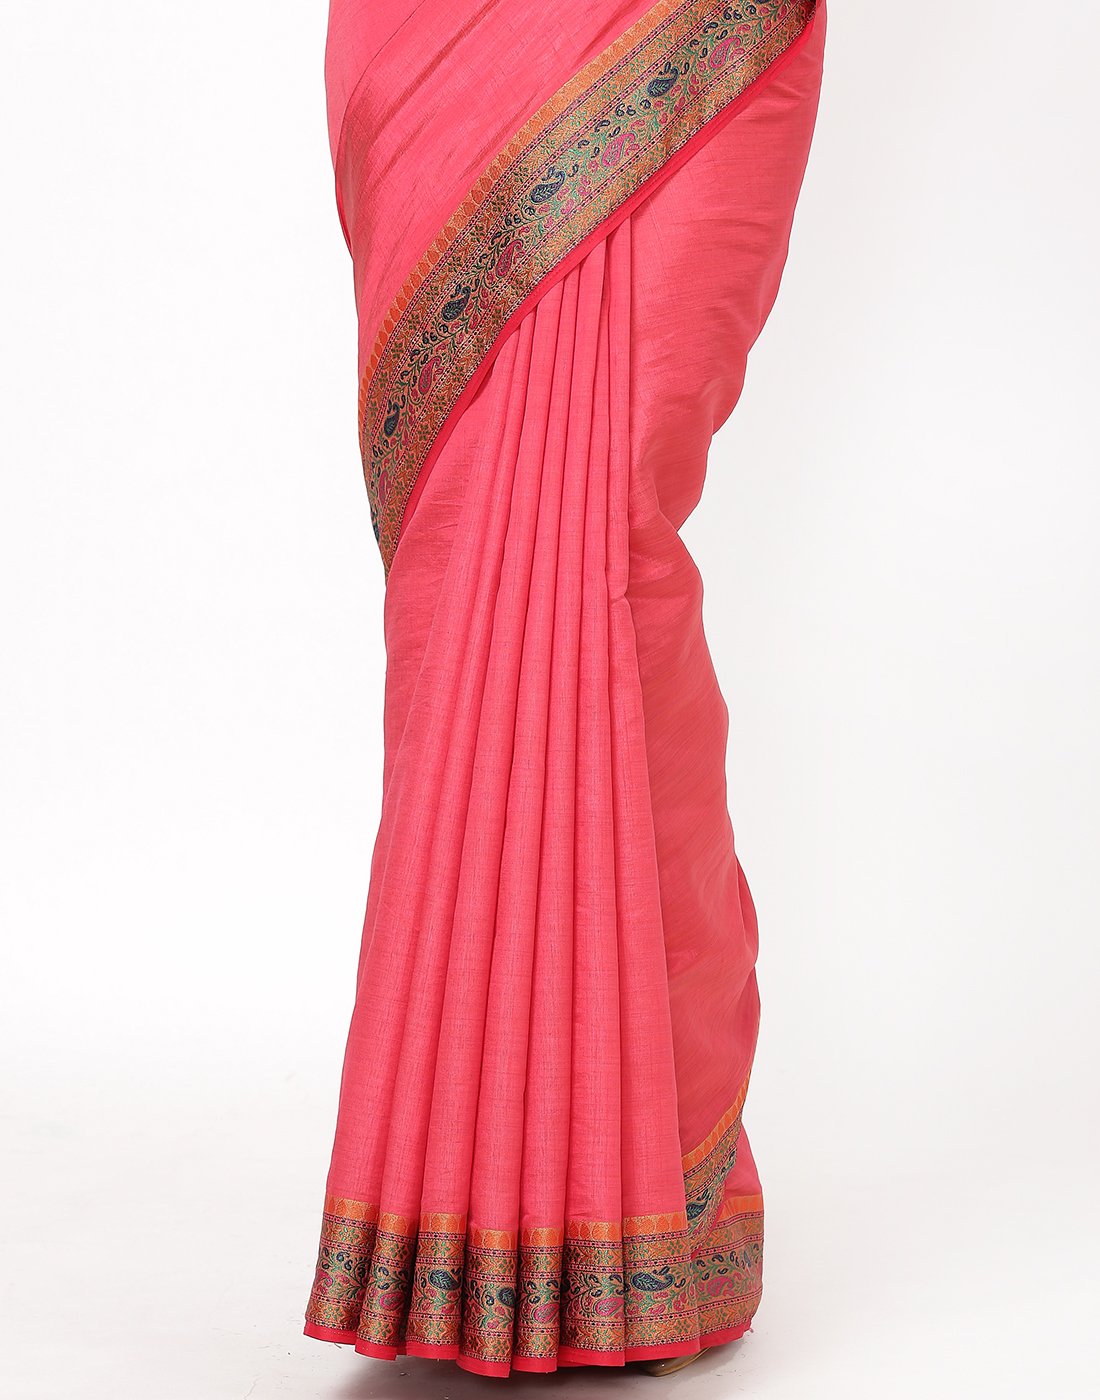 MBZ Meena Bazaar-Hot Pink Art Handloom Saree